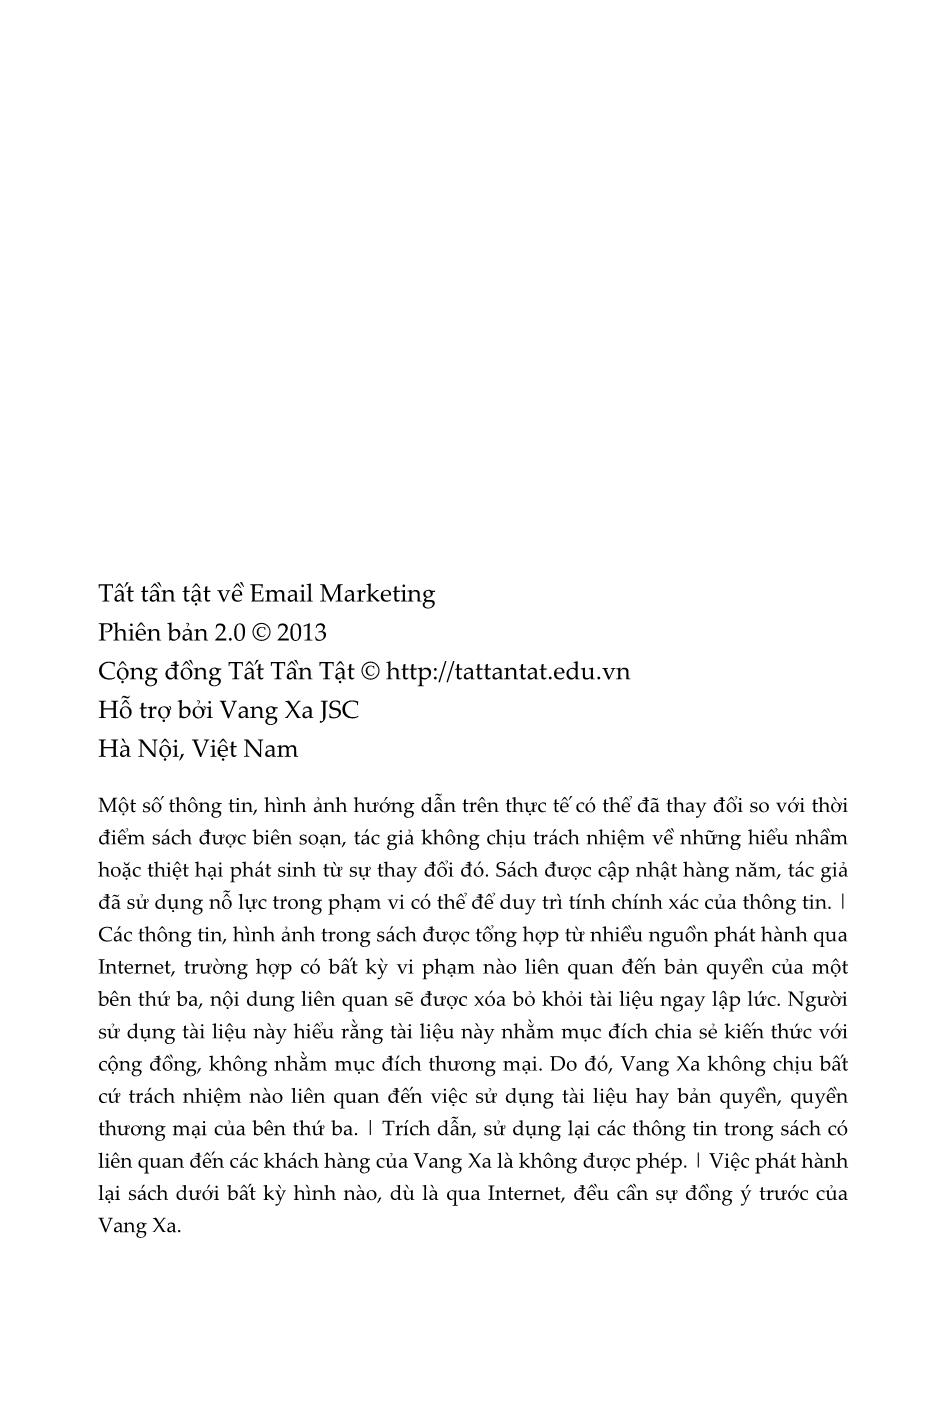 Tất tần tật về Email Marketing (Phiên bản 2) trang 2